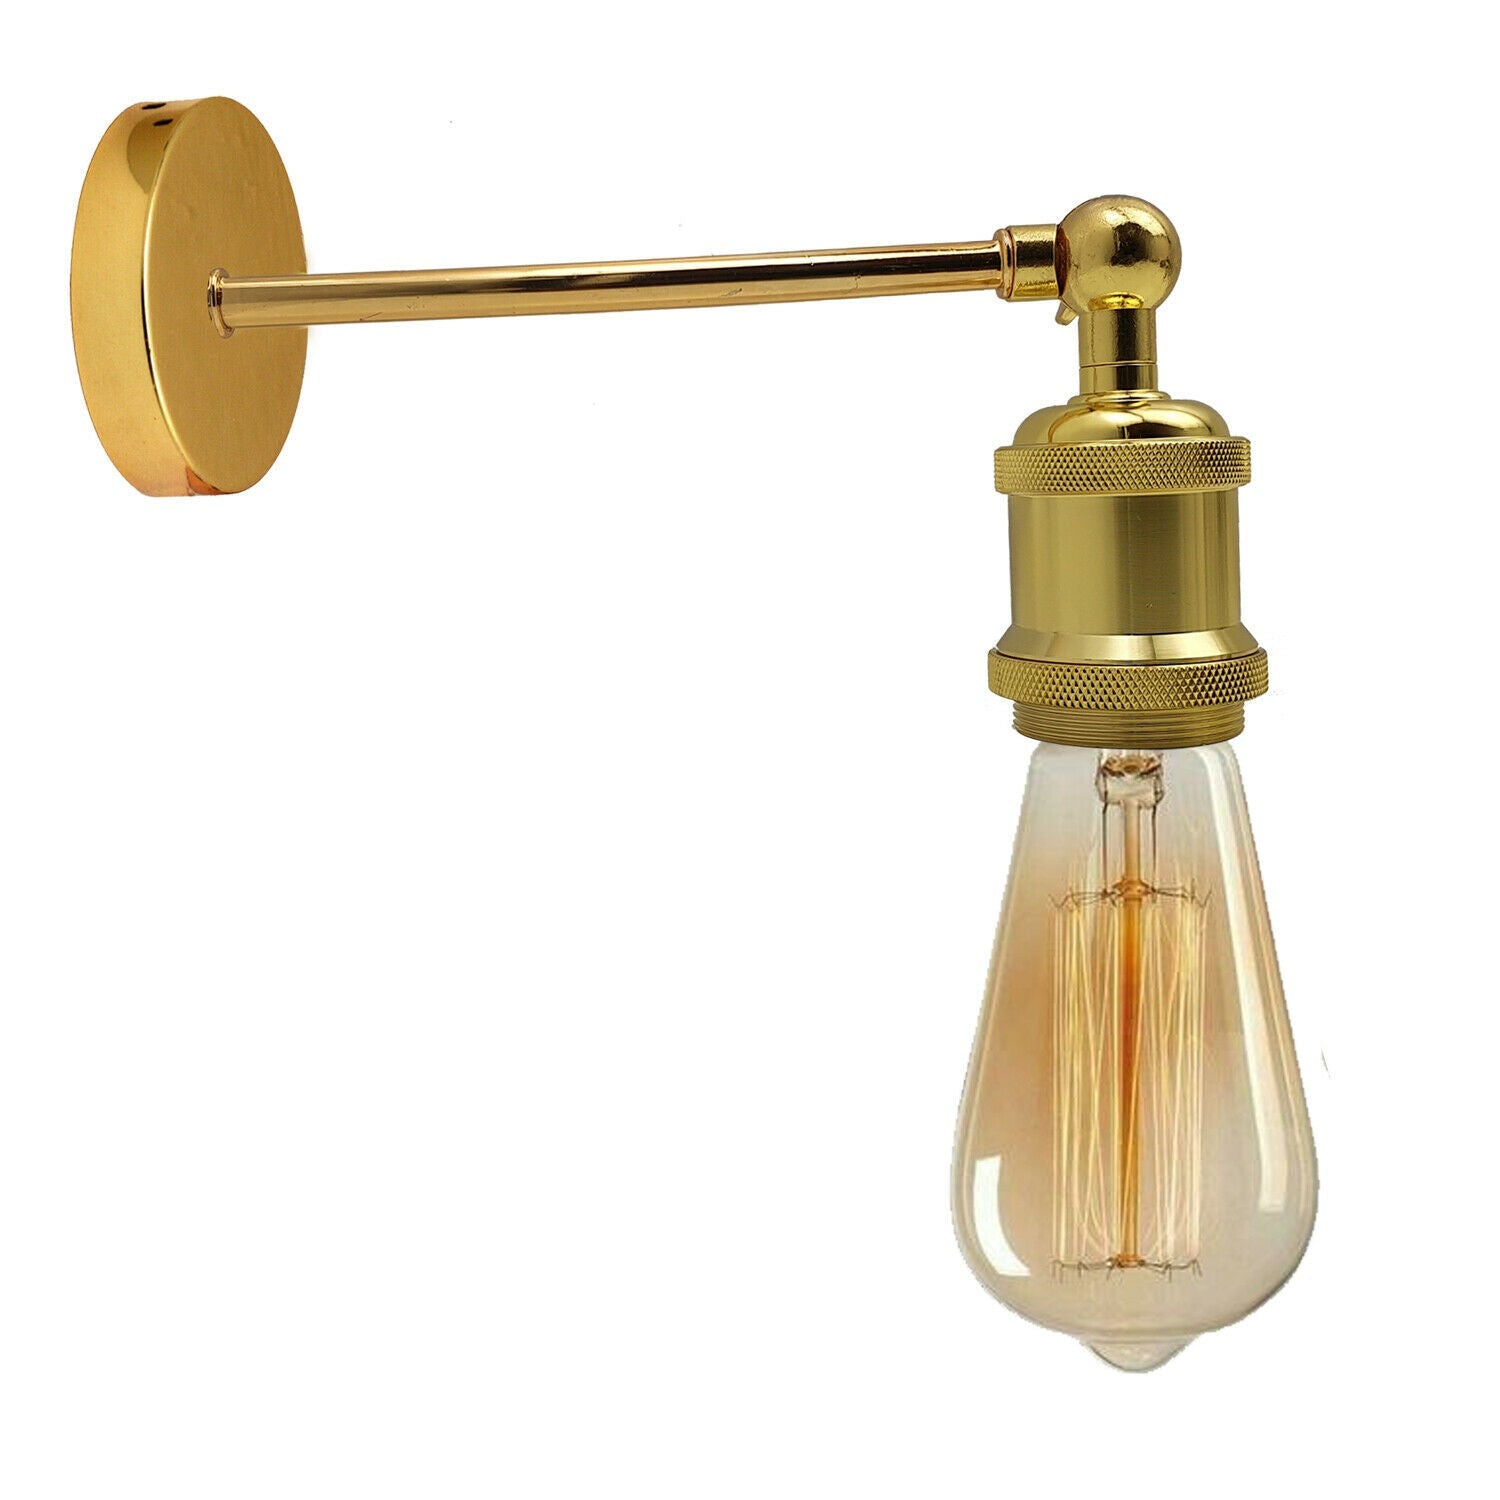 Industriel fransk guld Retro justerbare væglamper Vintage Style Sconce Lamp Fitting Kit